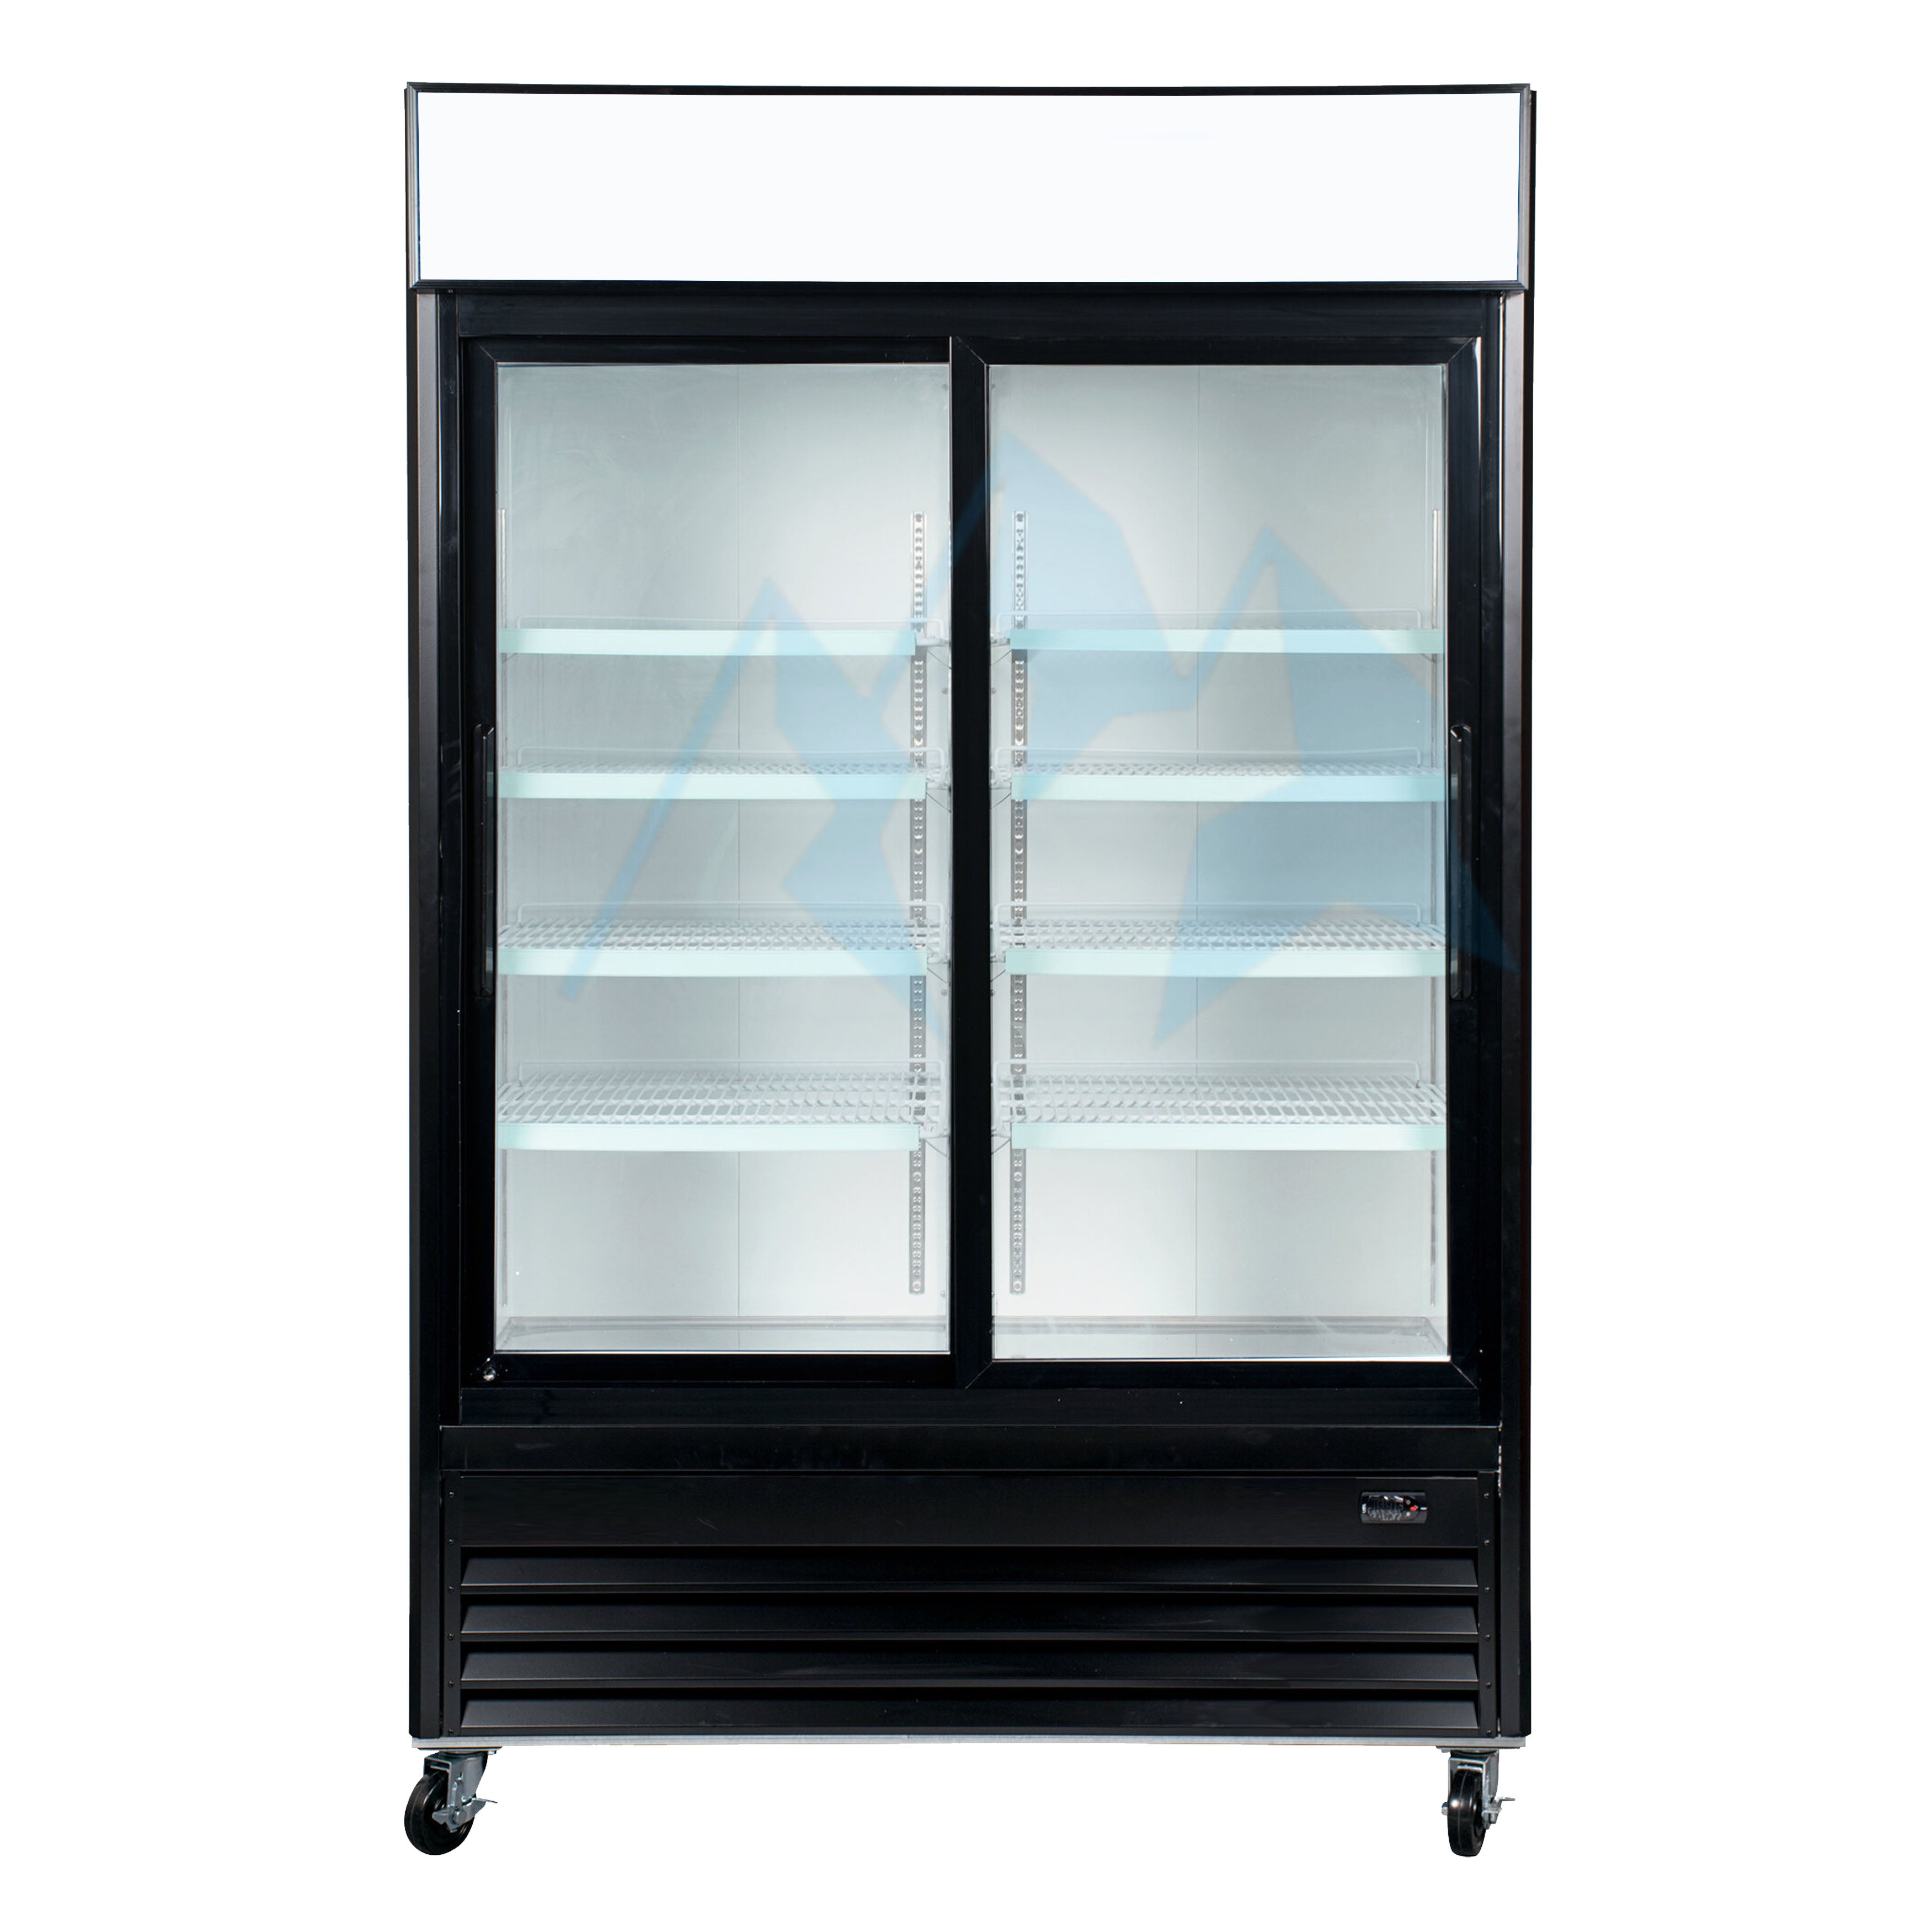 Chef AAA - LGD-600S, Commercial 2 Sliding Glass Door Merchandiser Refrigerator